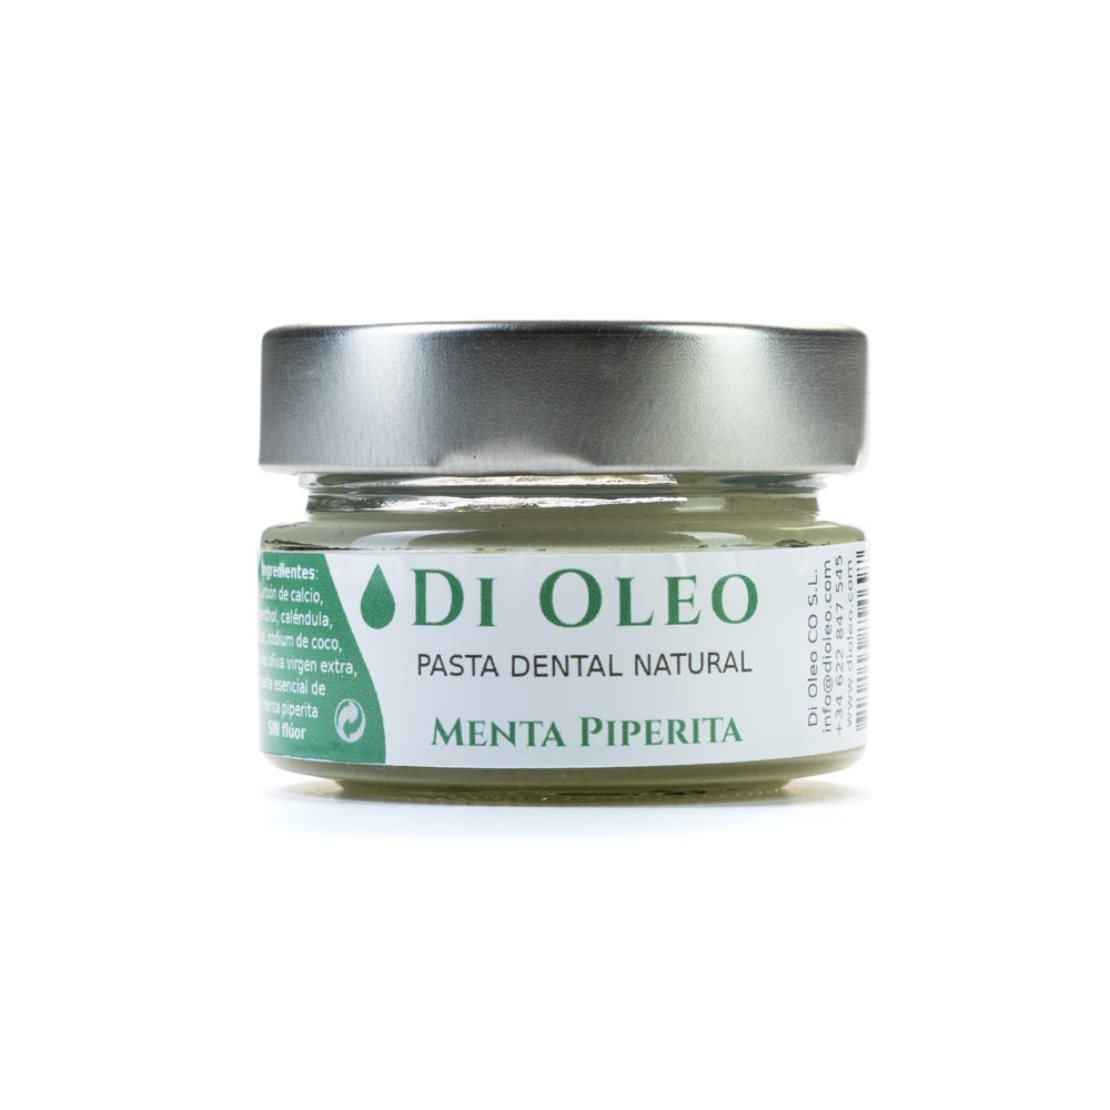 pasta de dientes en crema natural dioleo - Menta Piperita